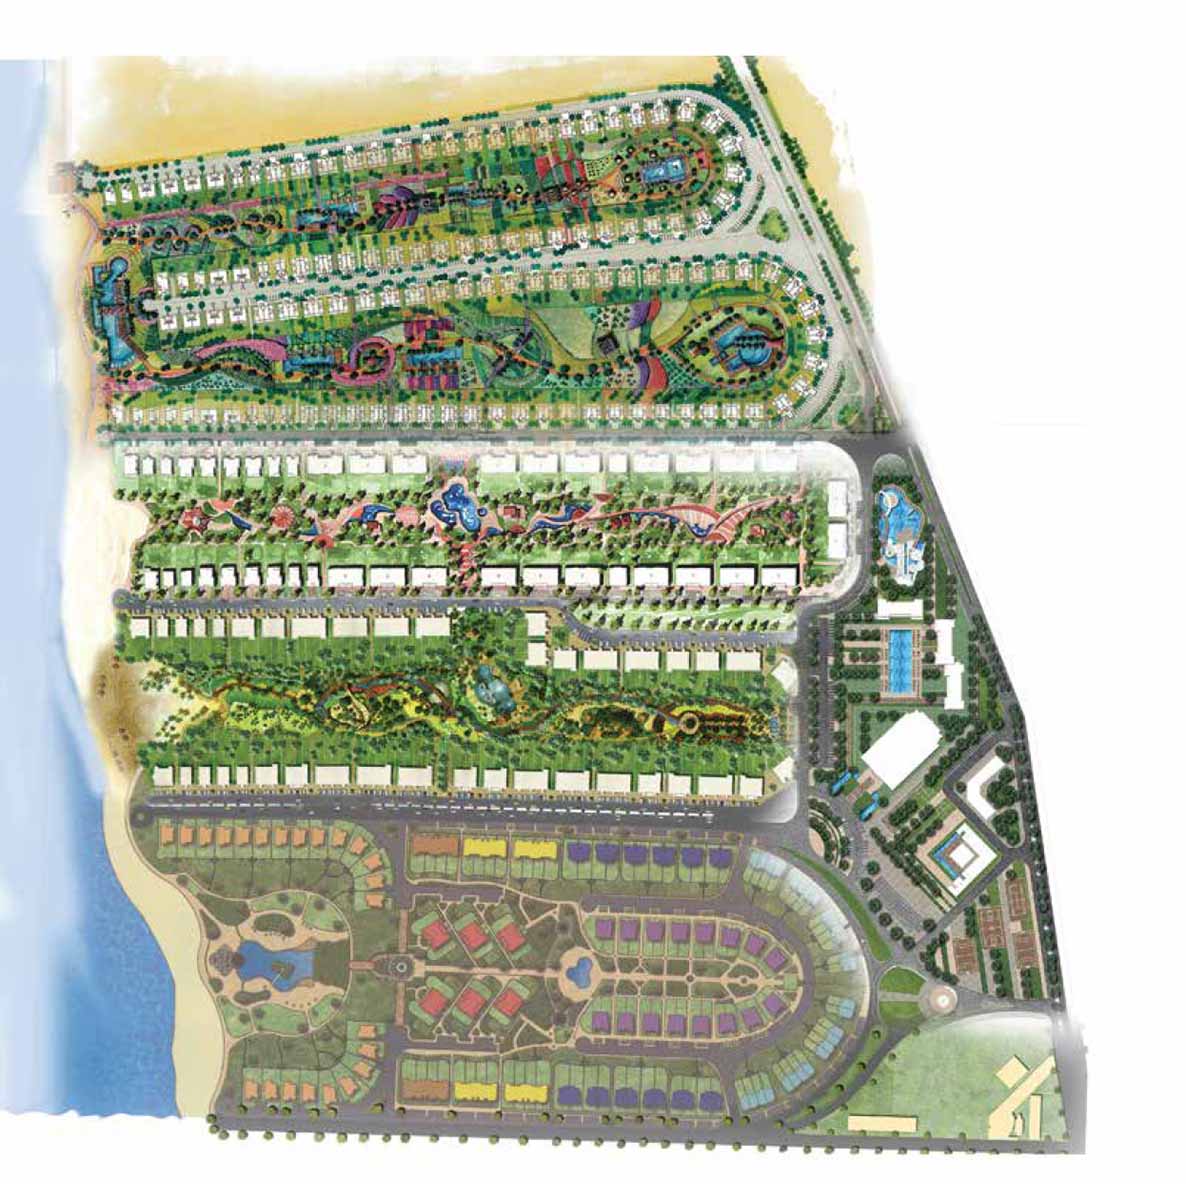 Paradise Ras Sudr Resort master plan - المخطط العام لقرية باراديس رأس سدر - احجز الان شاليهات بافضل شاطيء البحر الاحمر